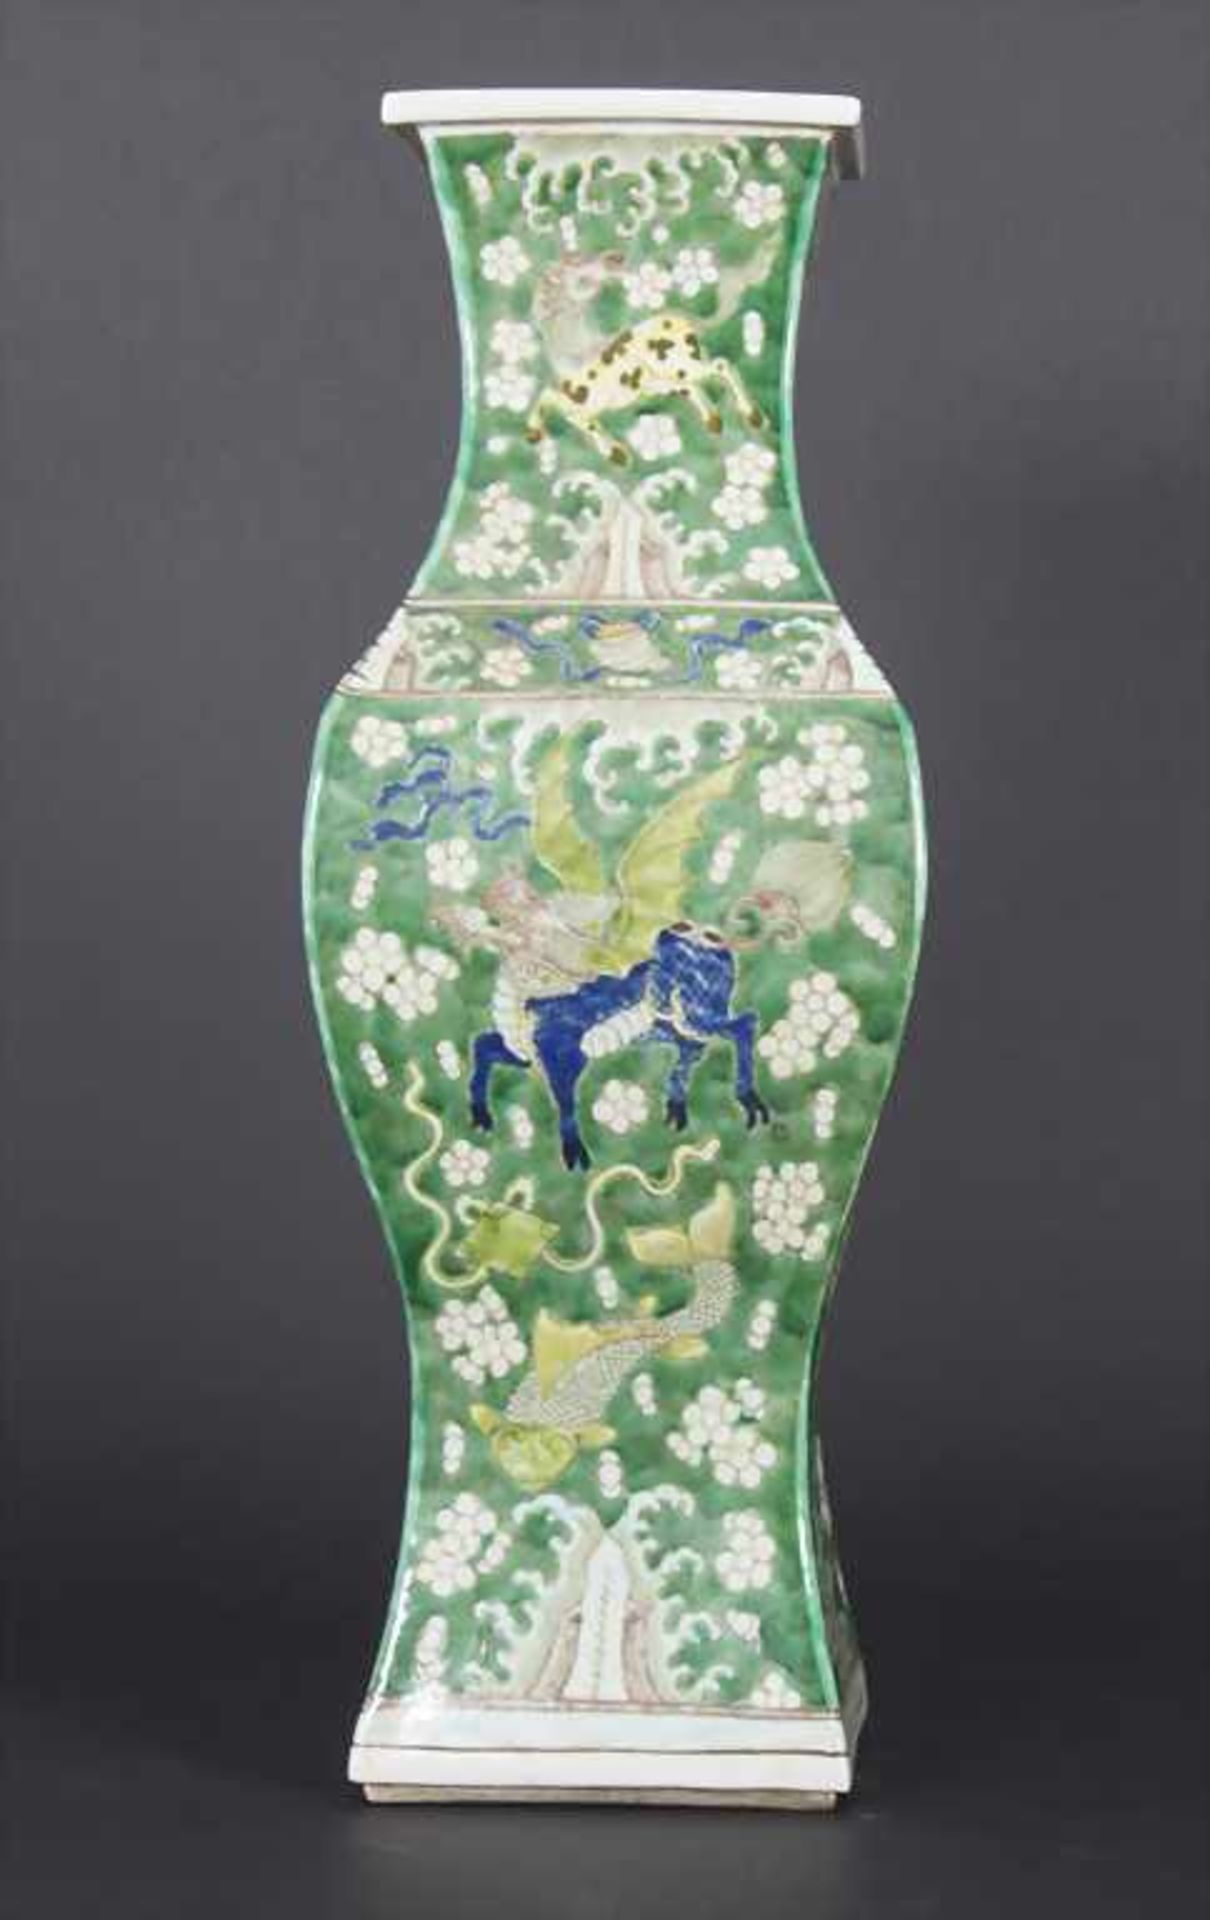 Ziervase, China, späte Qing-Dynastie, 19./20. Jh.Material: Porzellan, polychrom bemalt,Marke/ - Bild 11 aus 17